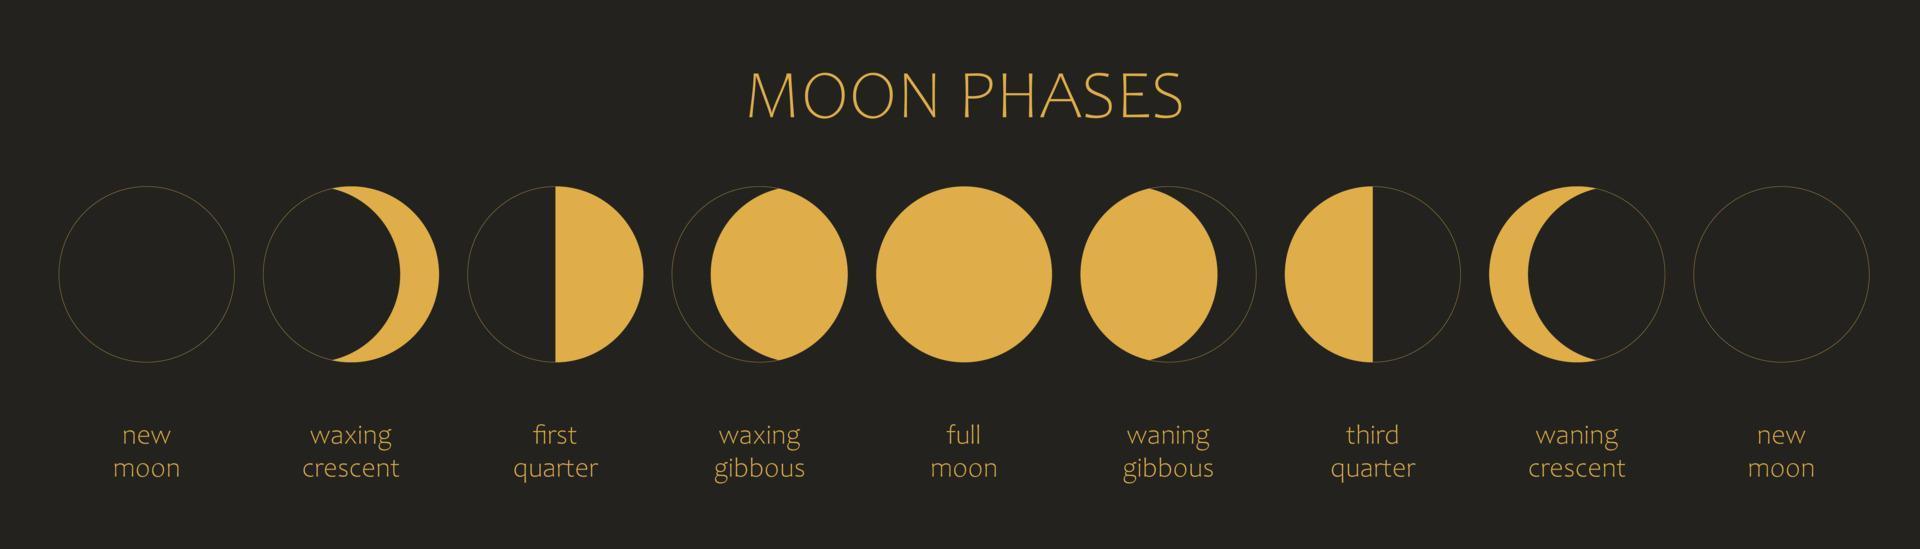 la lune, phases de lune sur fond noir. tout le cycle de la nouvelle lune à la pleine lune. illustration vectorielle de l'astronomie et du calendrier lunaire vecteur